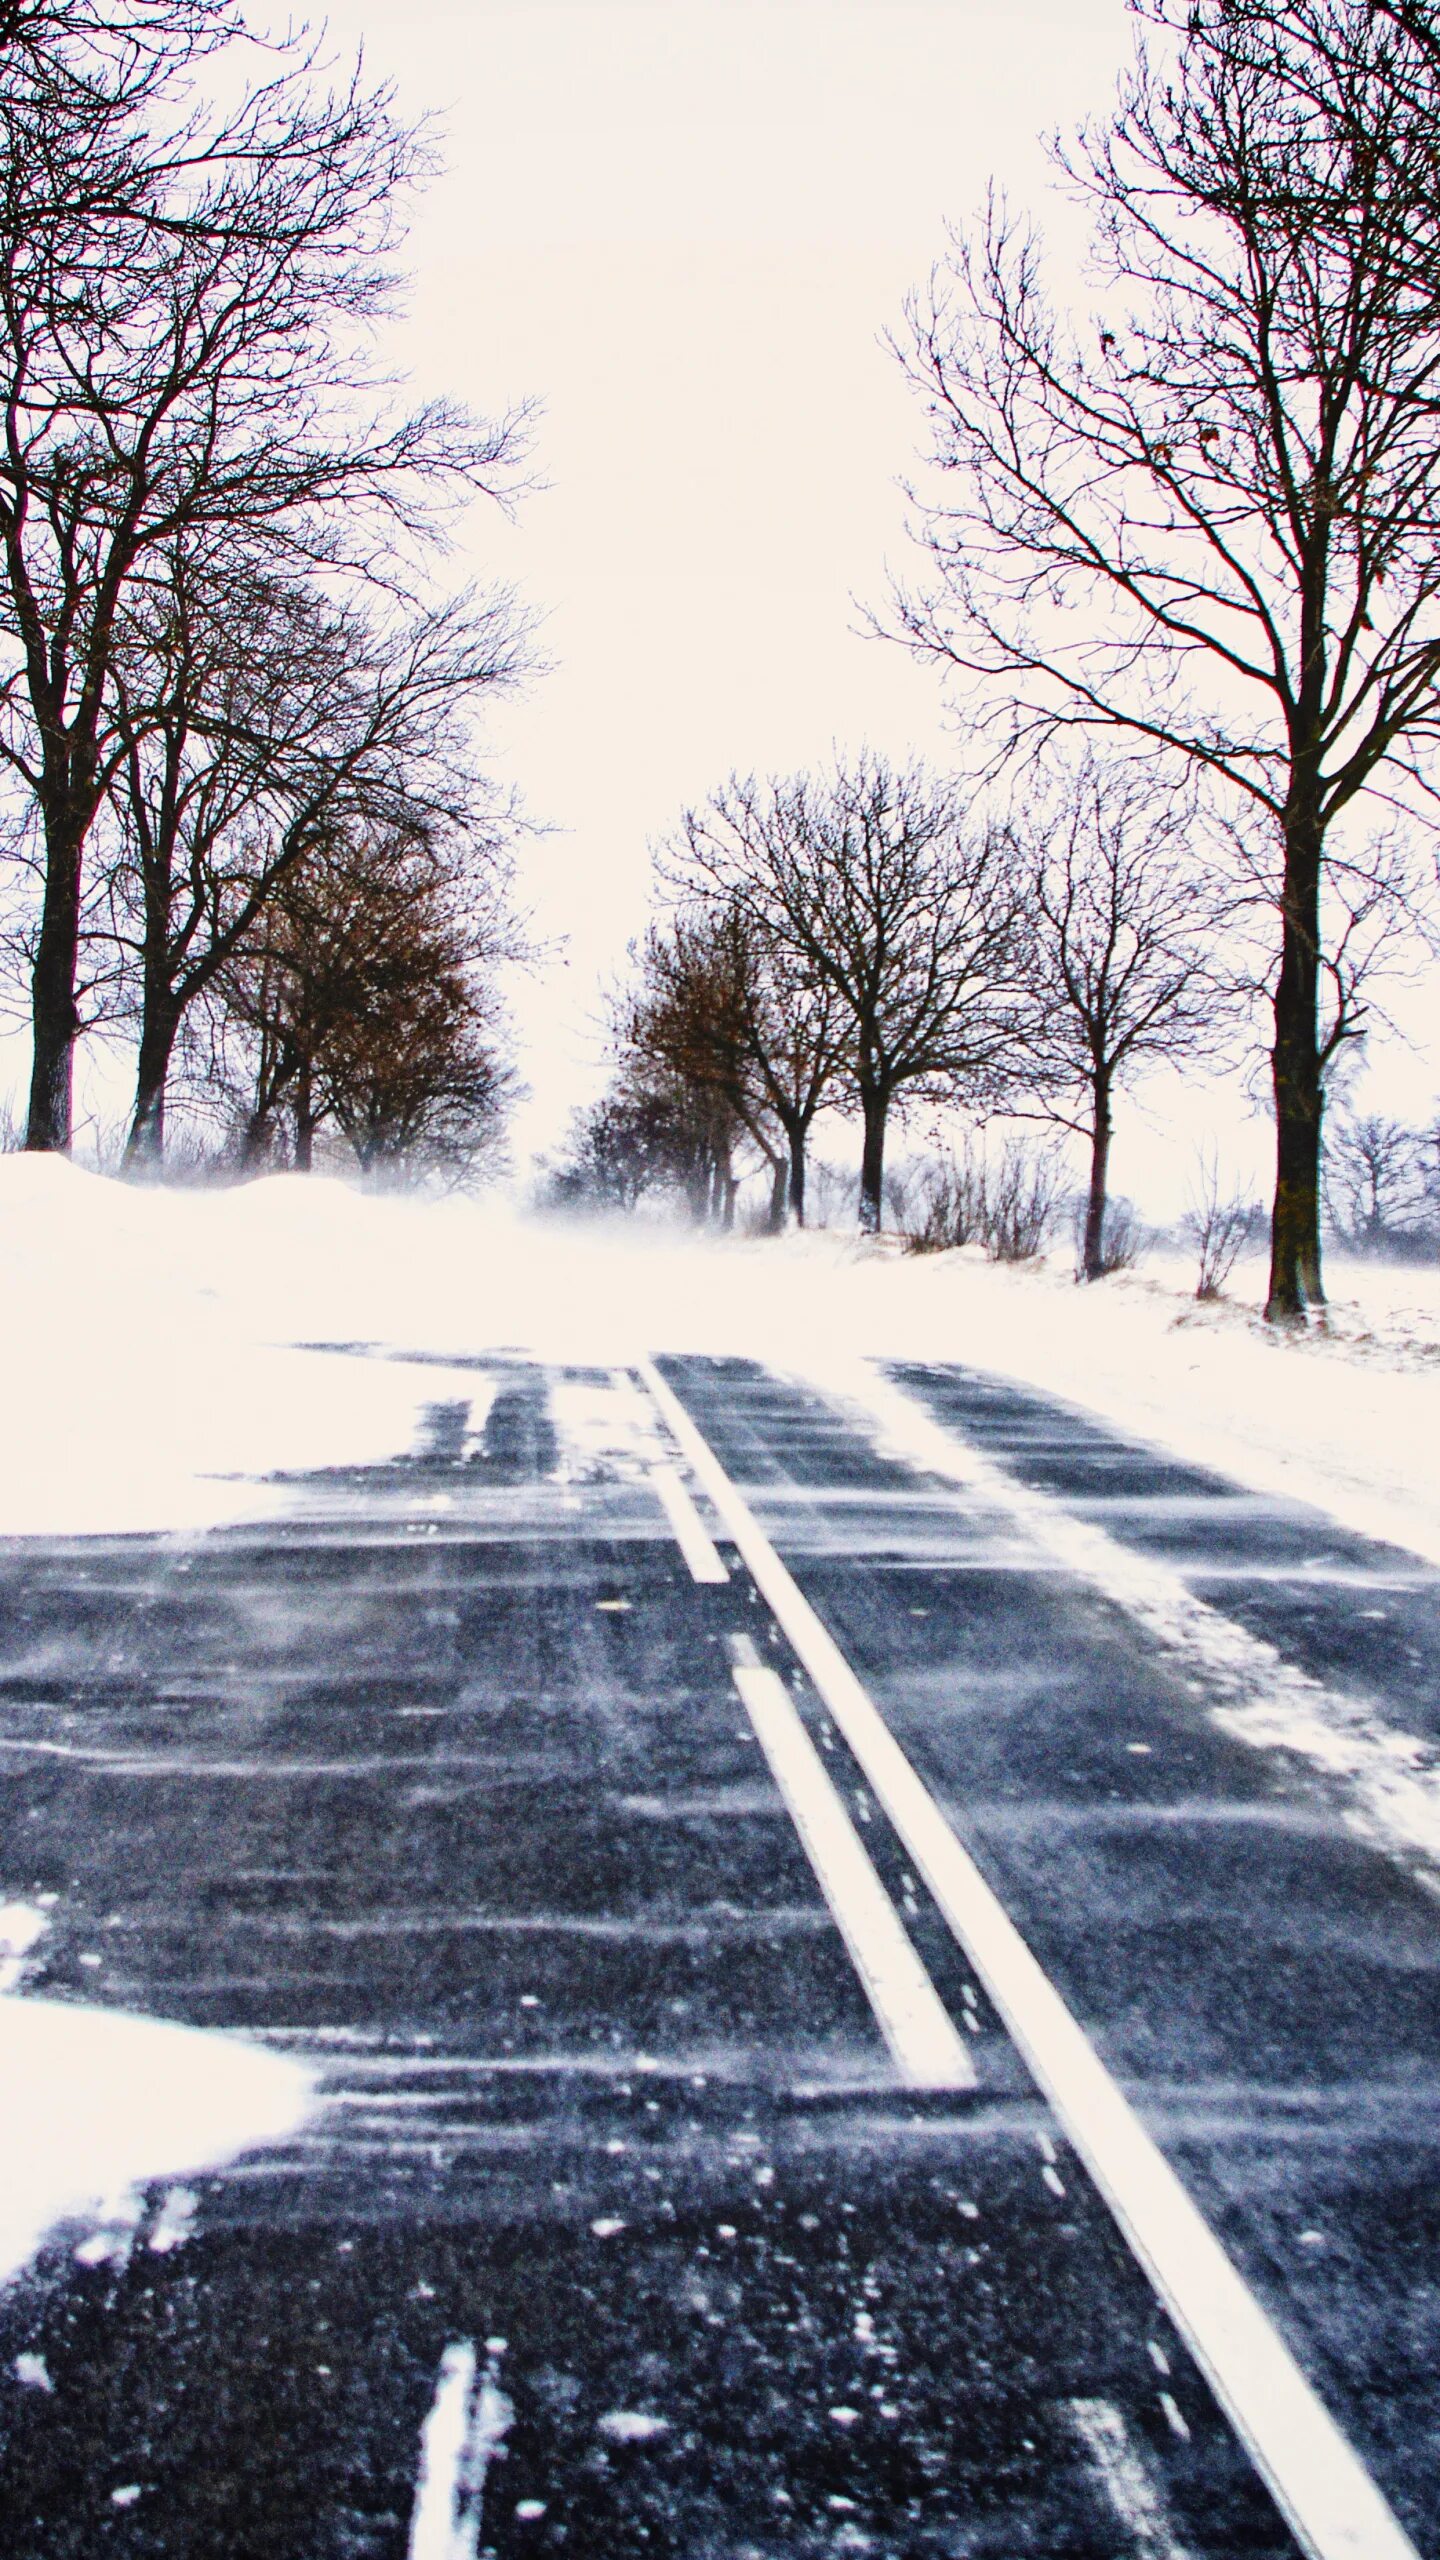 Наличие снега на дорогах. Зимняя дорога. Снегопад на дороге. Дорога с заснеженными деревьями. Дорога со снегом весной.